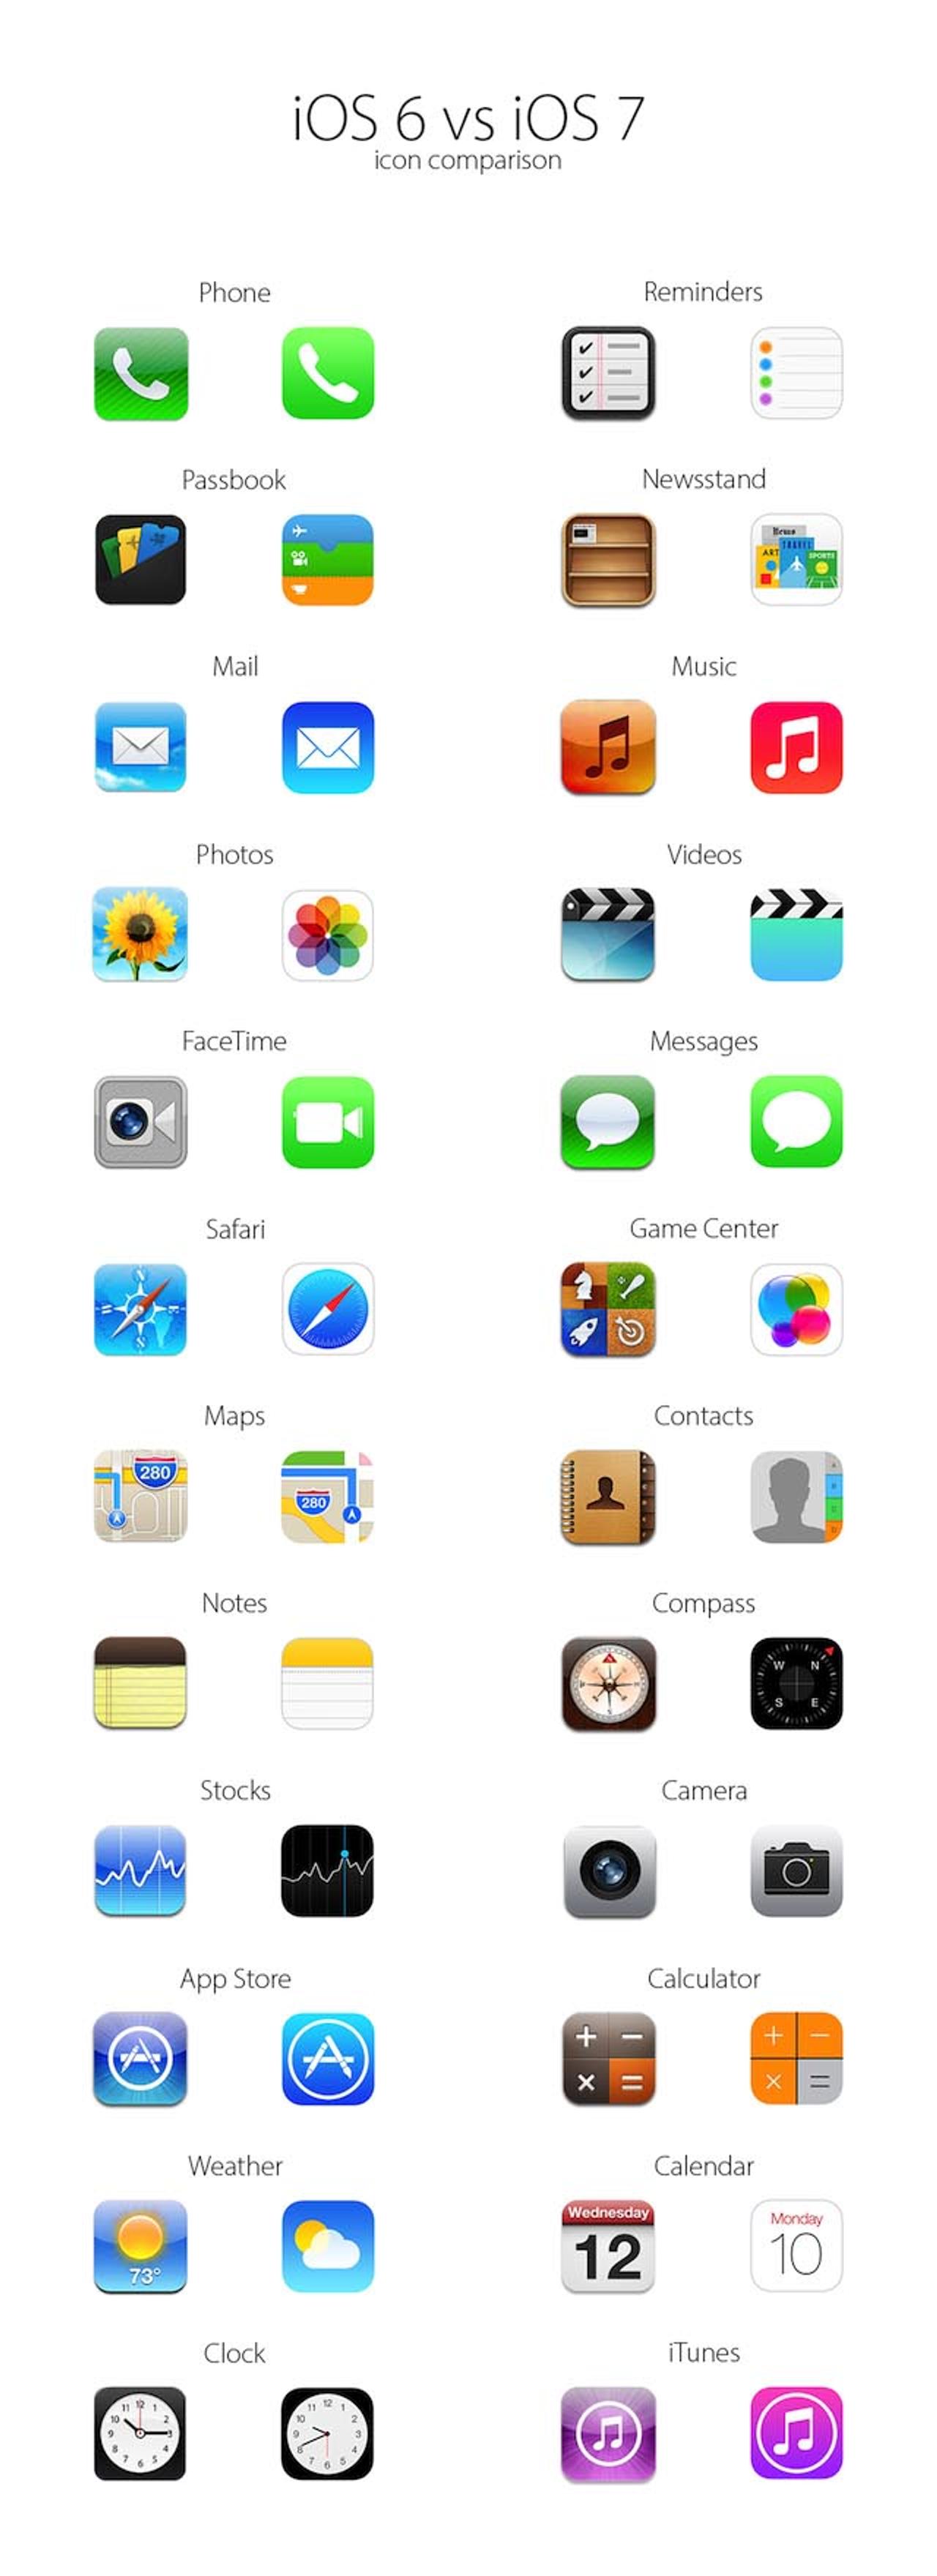 ［ #WWDC2013 ］早く慣れておきたい人用。iOS 6とiOS 7のアイコンを比較した縦長画像